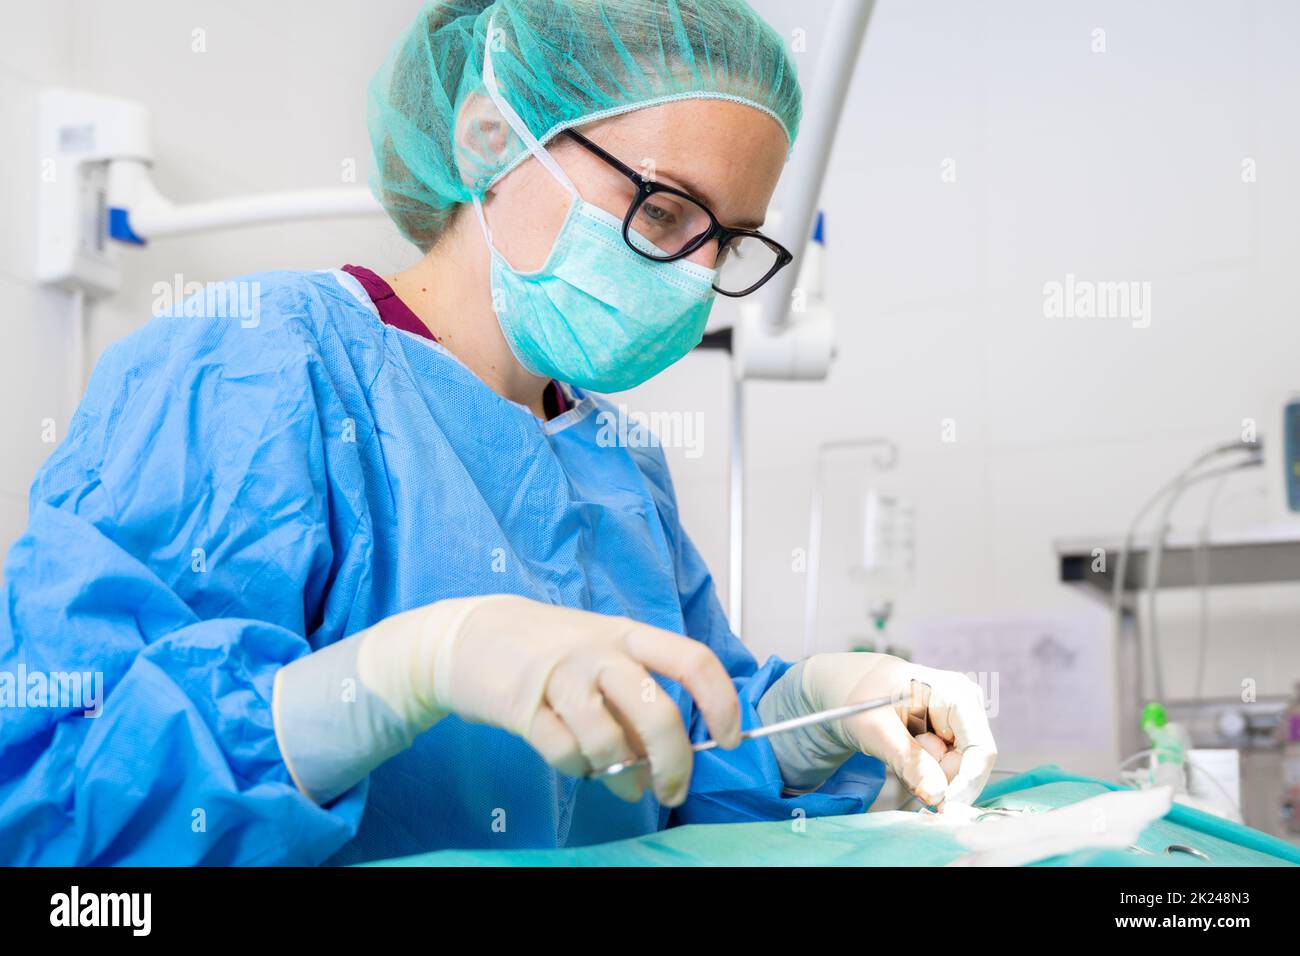 Nahaufnahme eines weiblichen Chirurgen, der sterile Kleidung trägt und im Operationssaal operiert. Hochwertige Fotografie Stockfoto